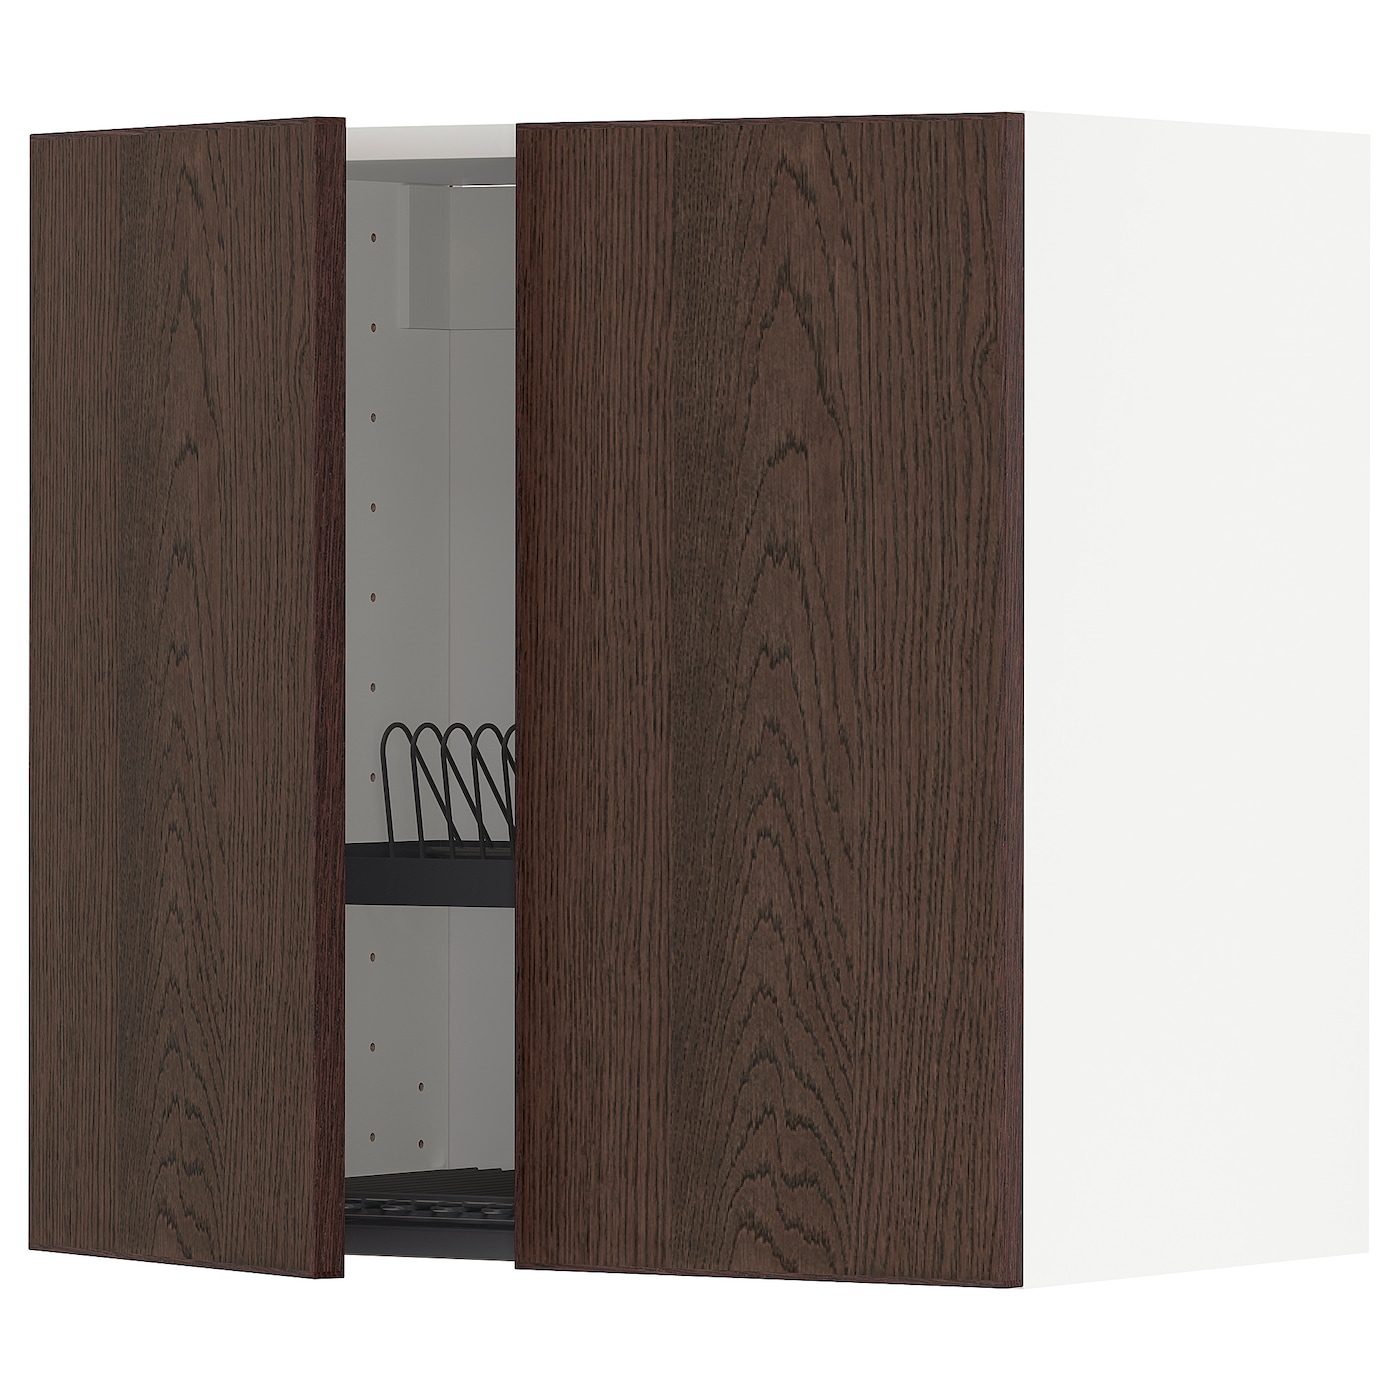 Навесной шкаф с сушилкой - METOD IKEA/ МЕТОД ИКЕА, 60х60 см, коричневый/белый